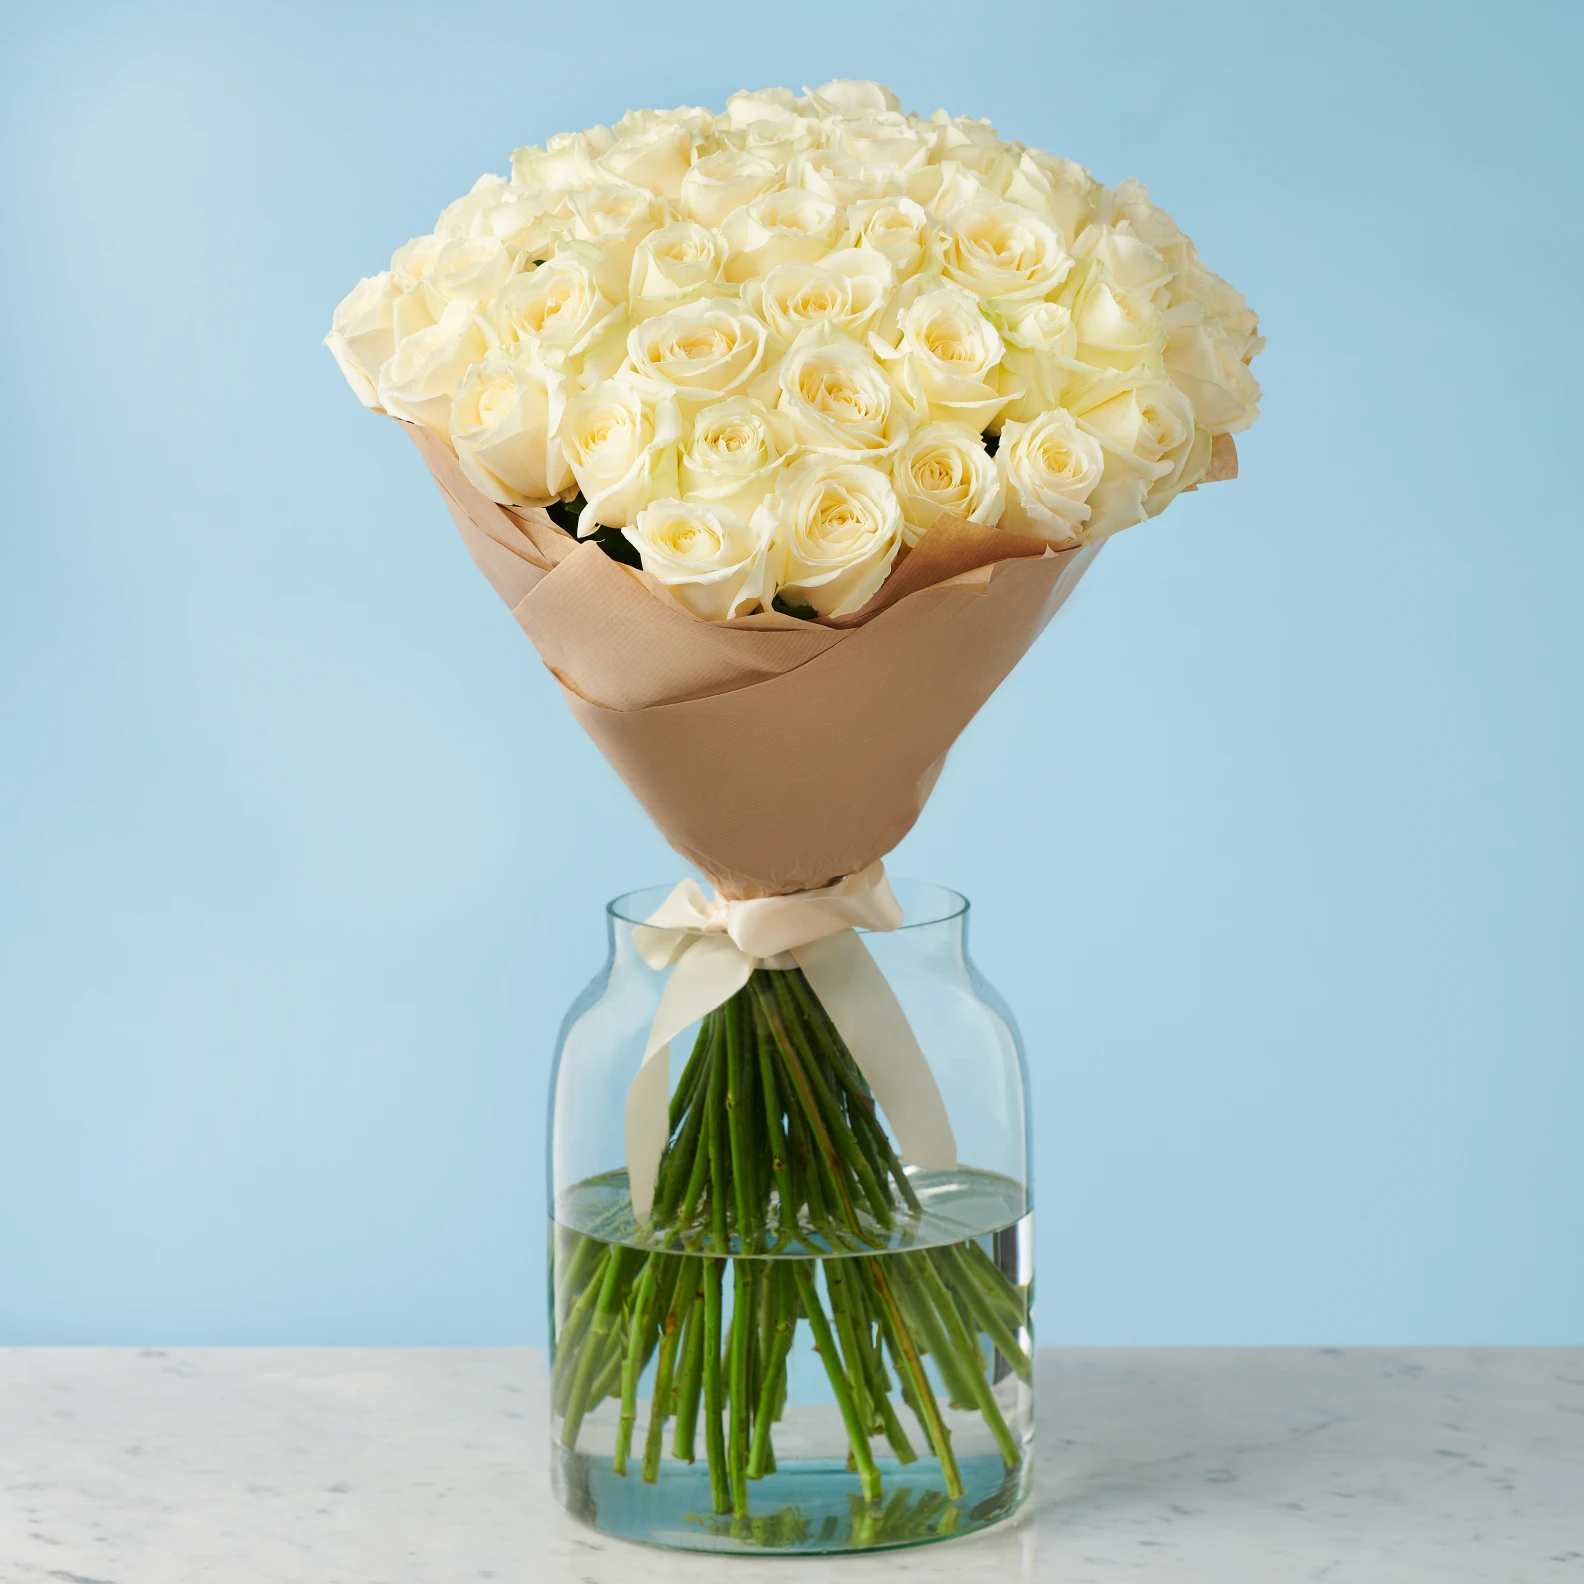 50 Premium White Roses - image №2